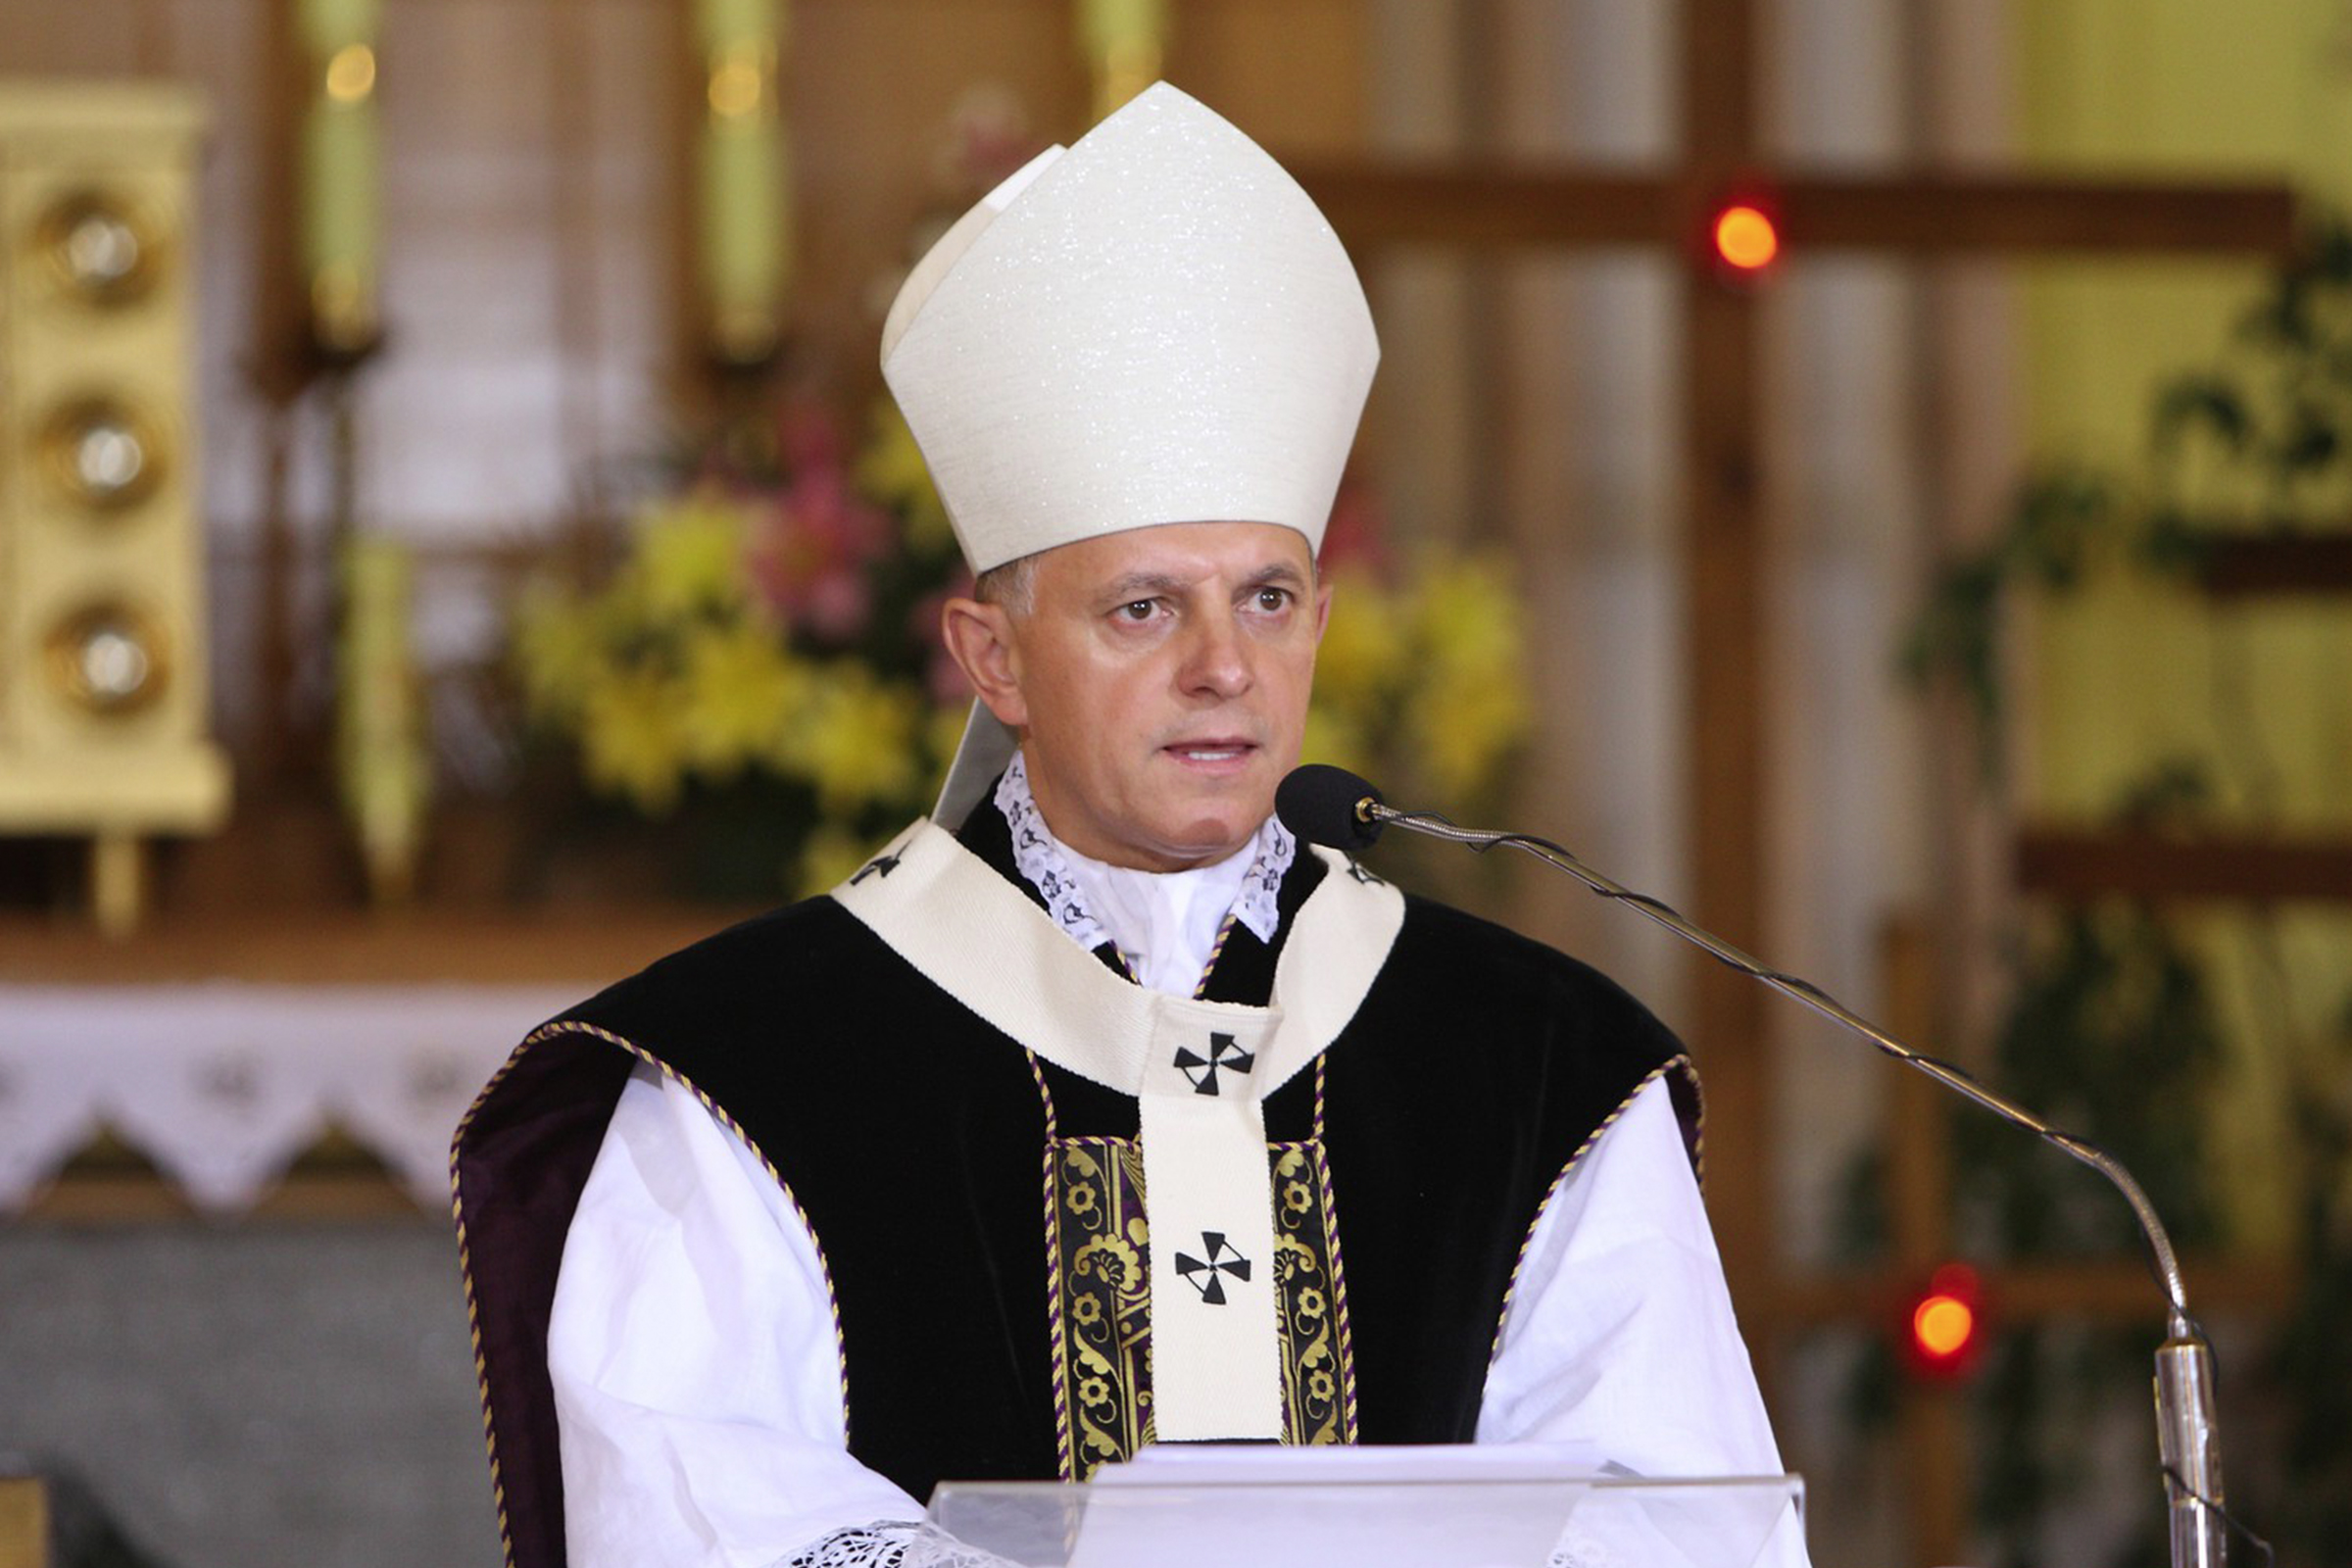 Ucraina, l'arcivescovo di Leopoli: "I governi si mettano d'accordo per finire la guerra"